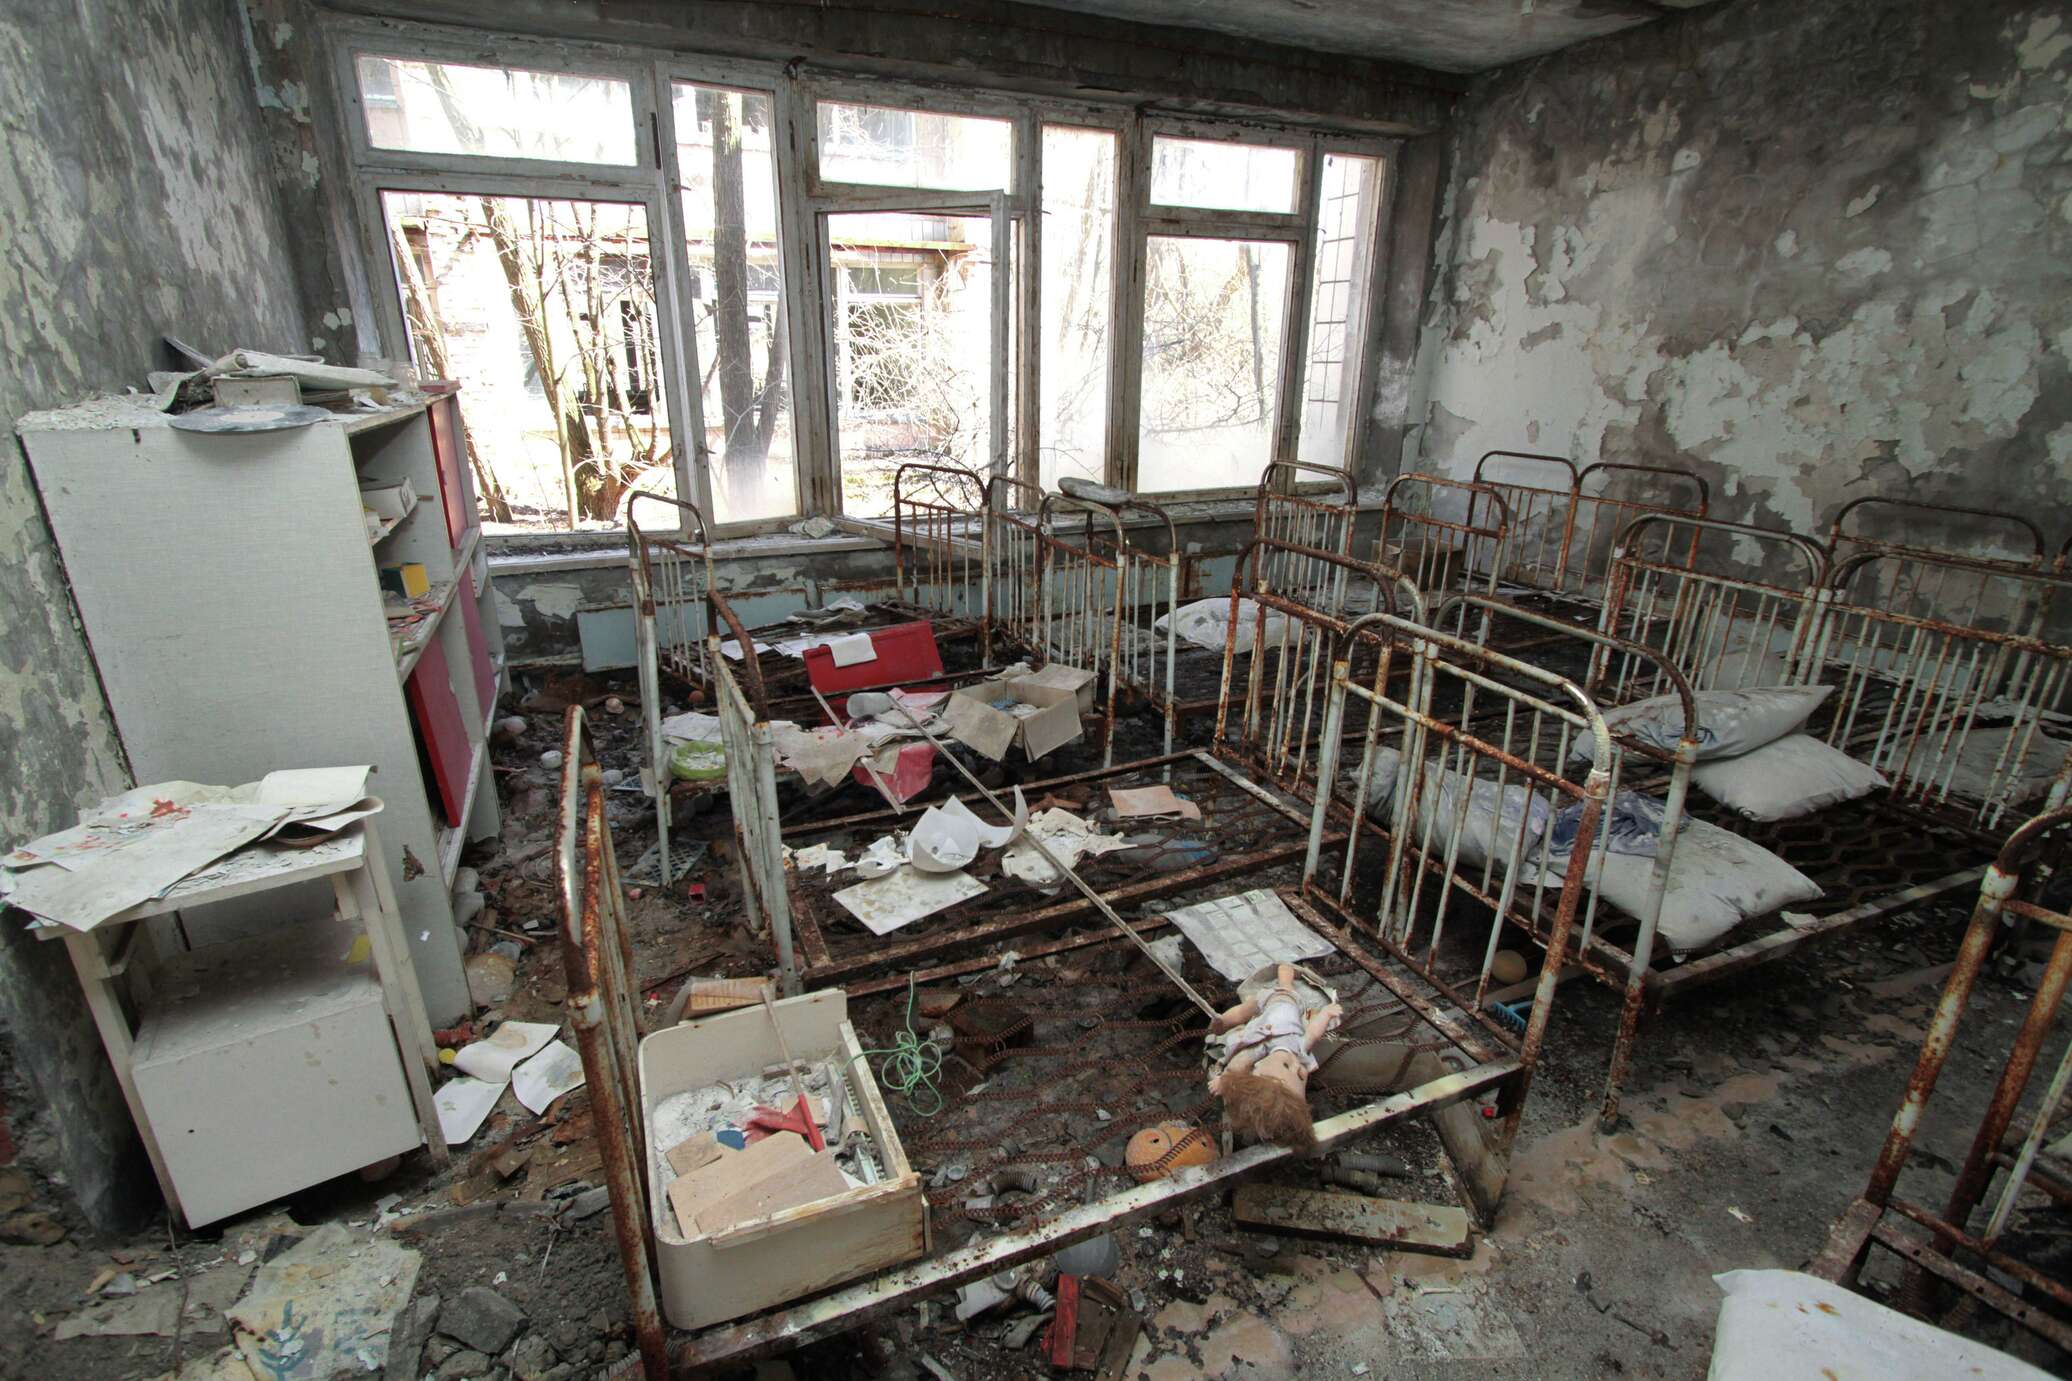 Чернобыль что случилось на самом. Зона отчуждения Чернобыльской АЭС 1986. Чернобыль Припять 1986. Припять после взрыва на Чернобыльской АЭС. Город Припять 1986 после аварии на ЧАЭС.